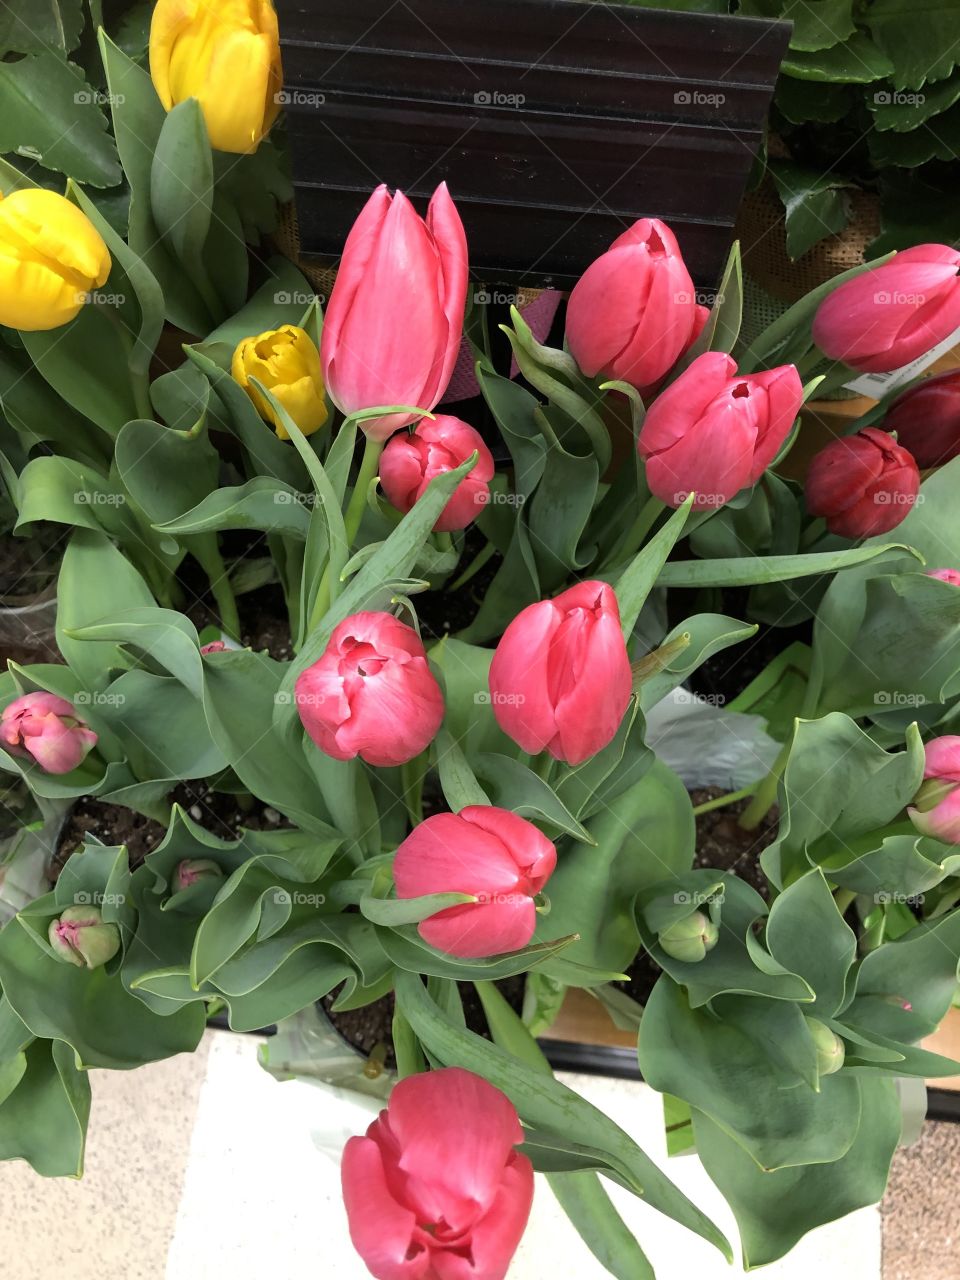 Tulips, so pretty